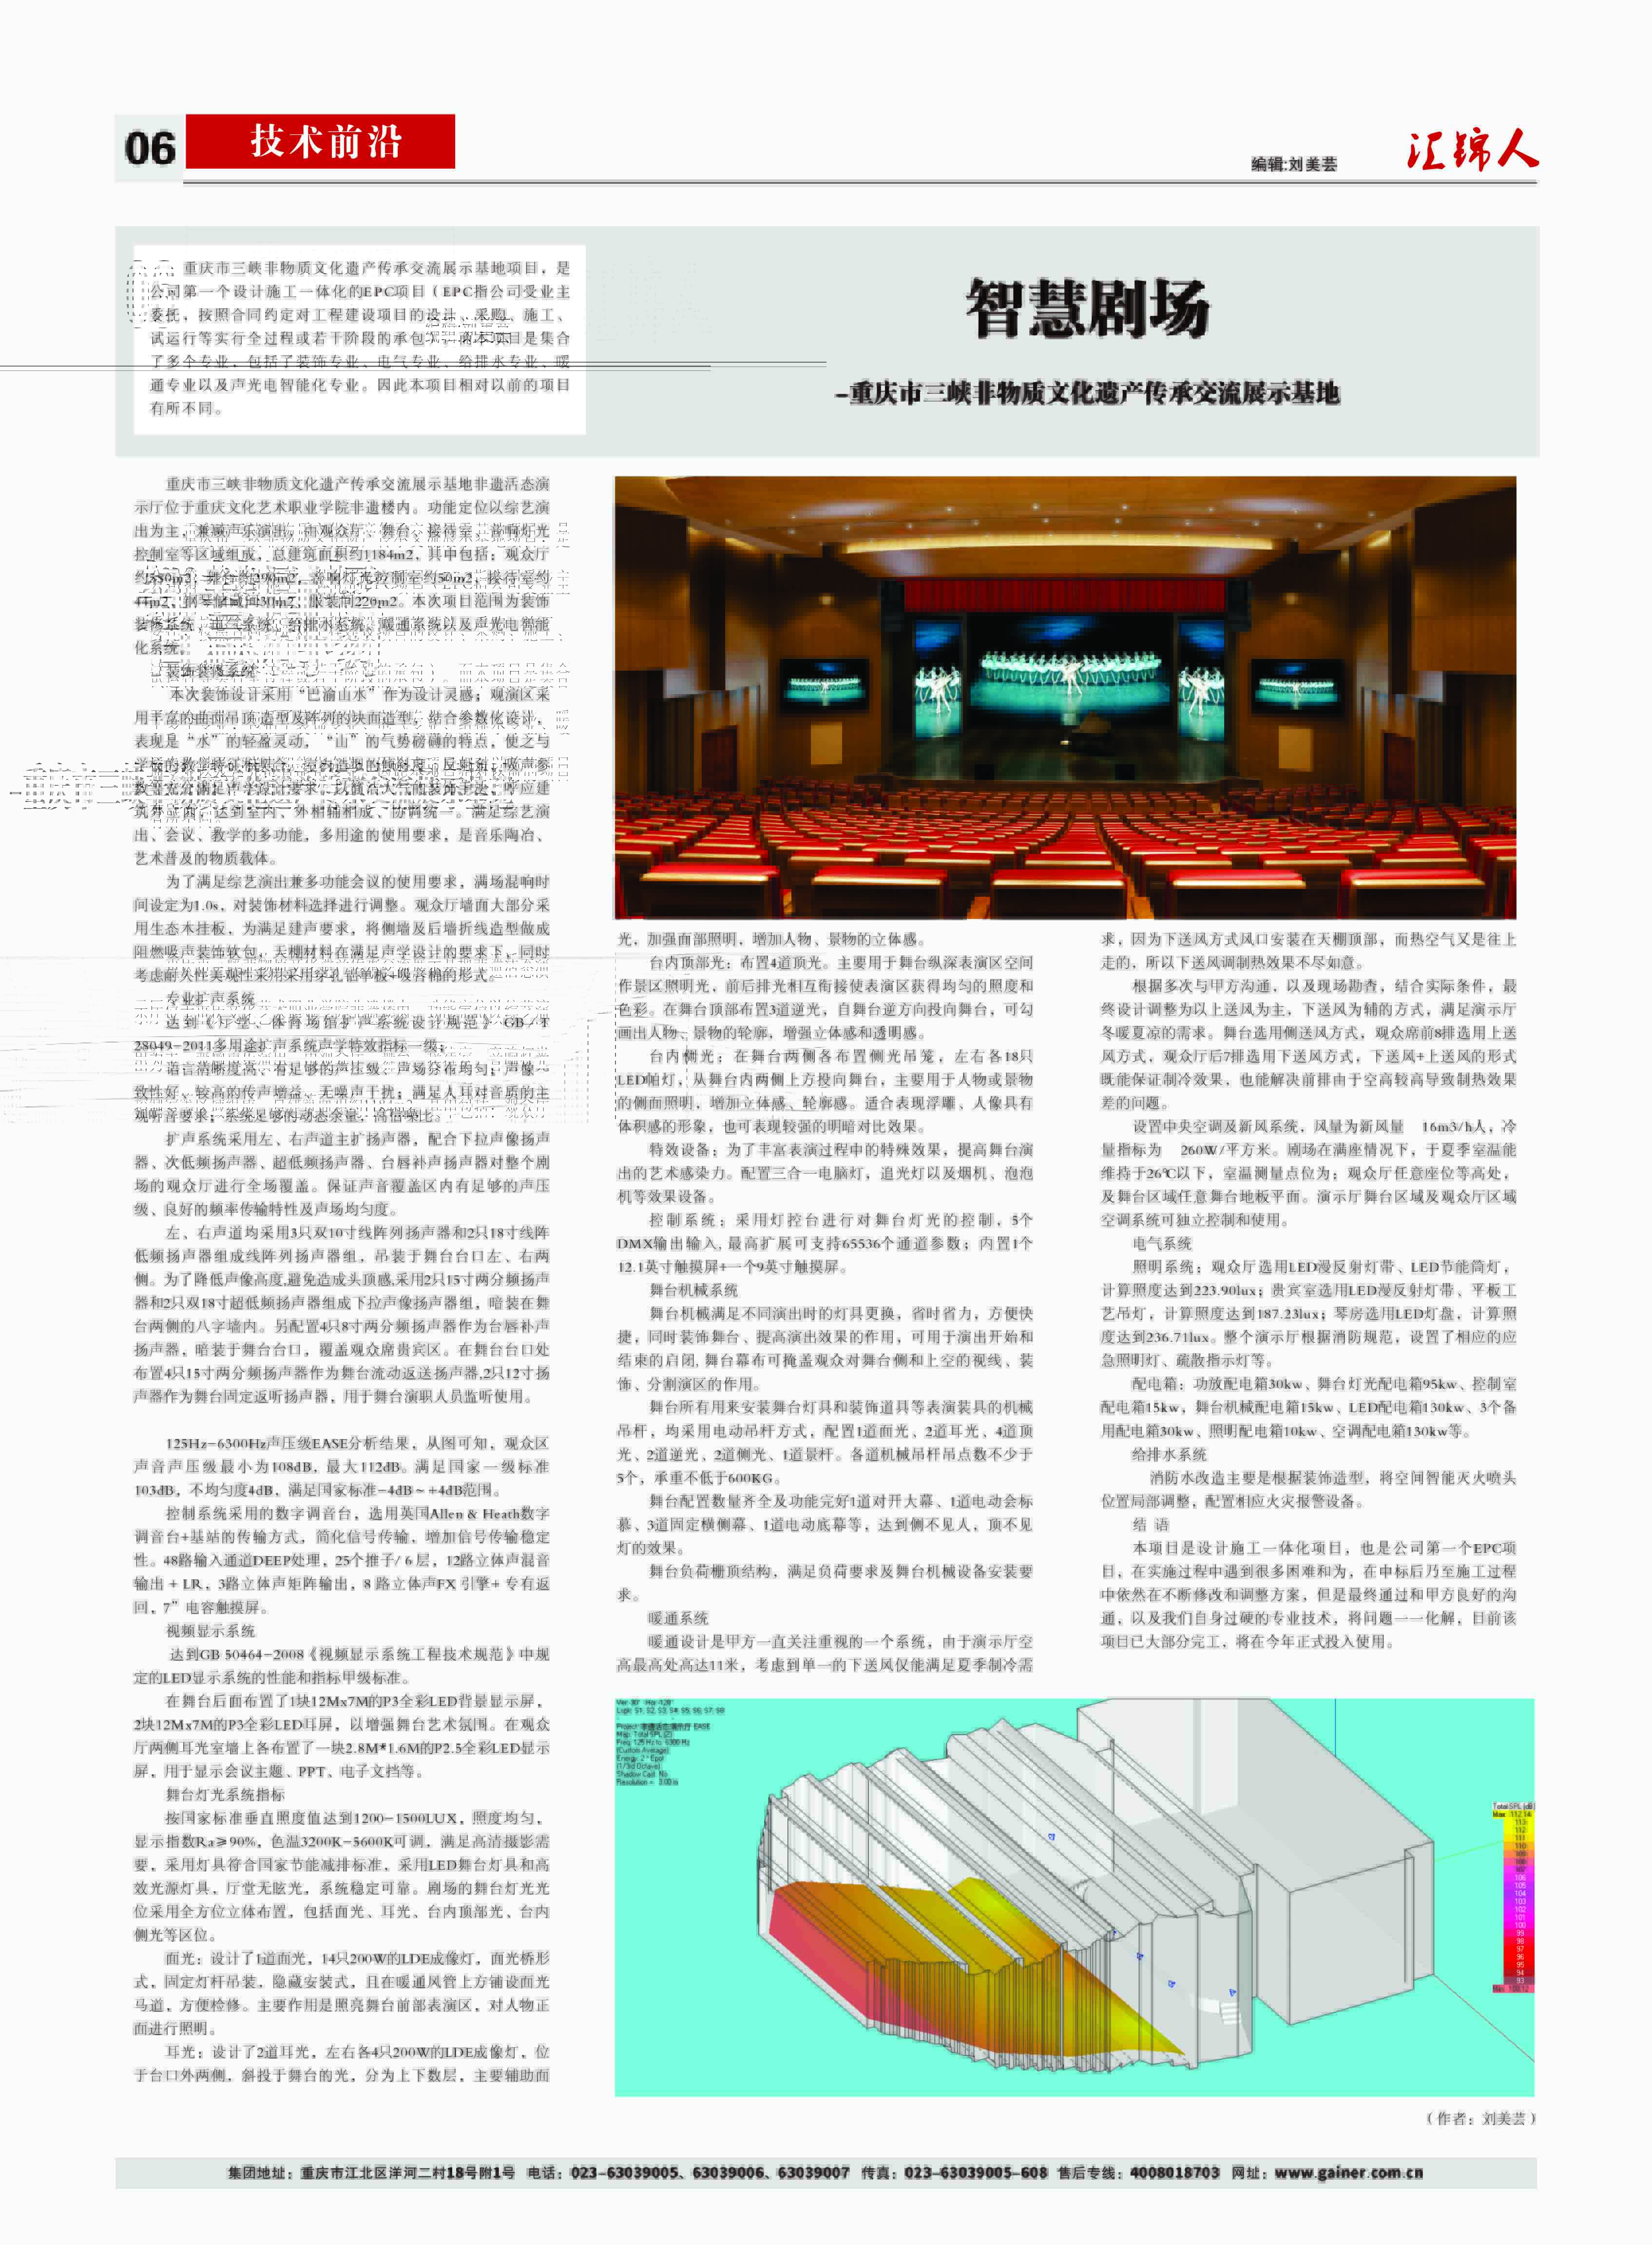 汇锦期刊第16期-修改版2版(3)-3.jpg